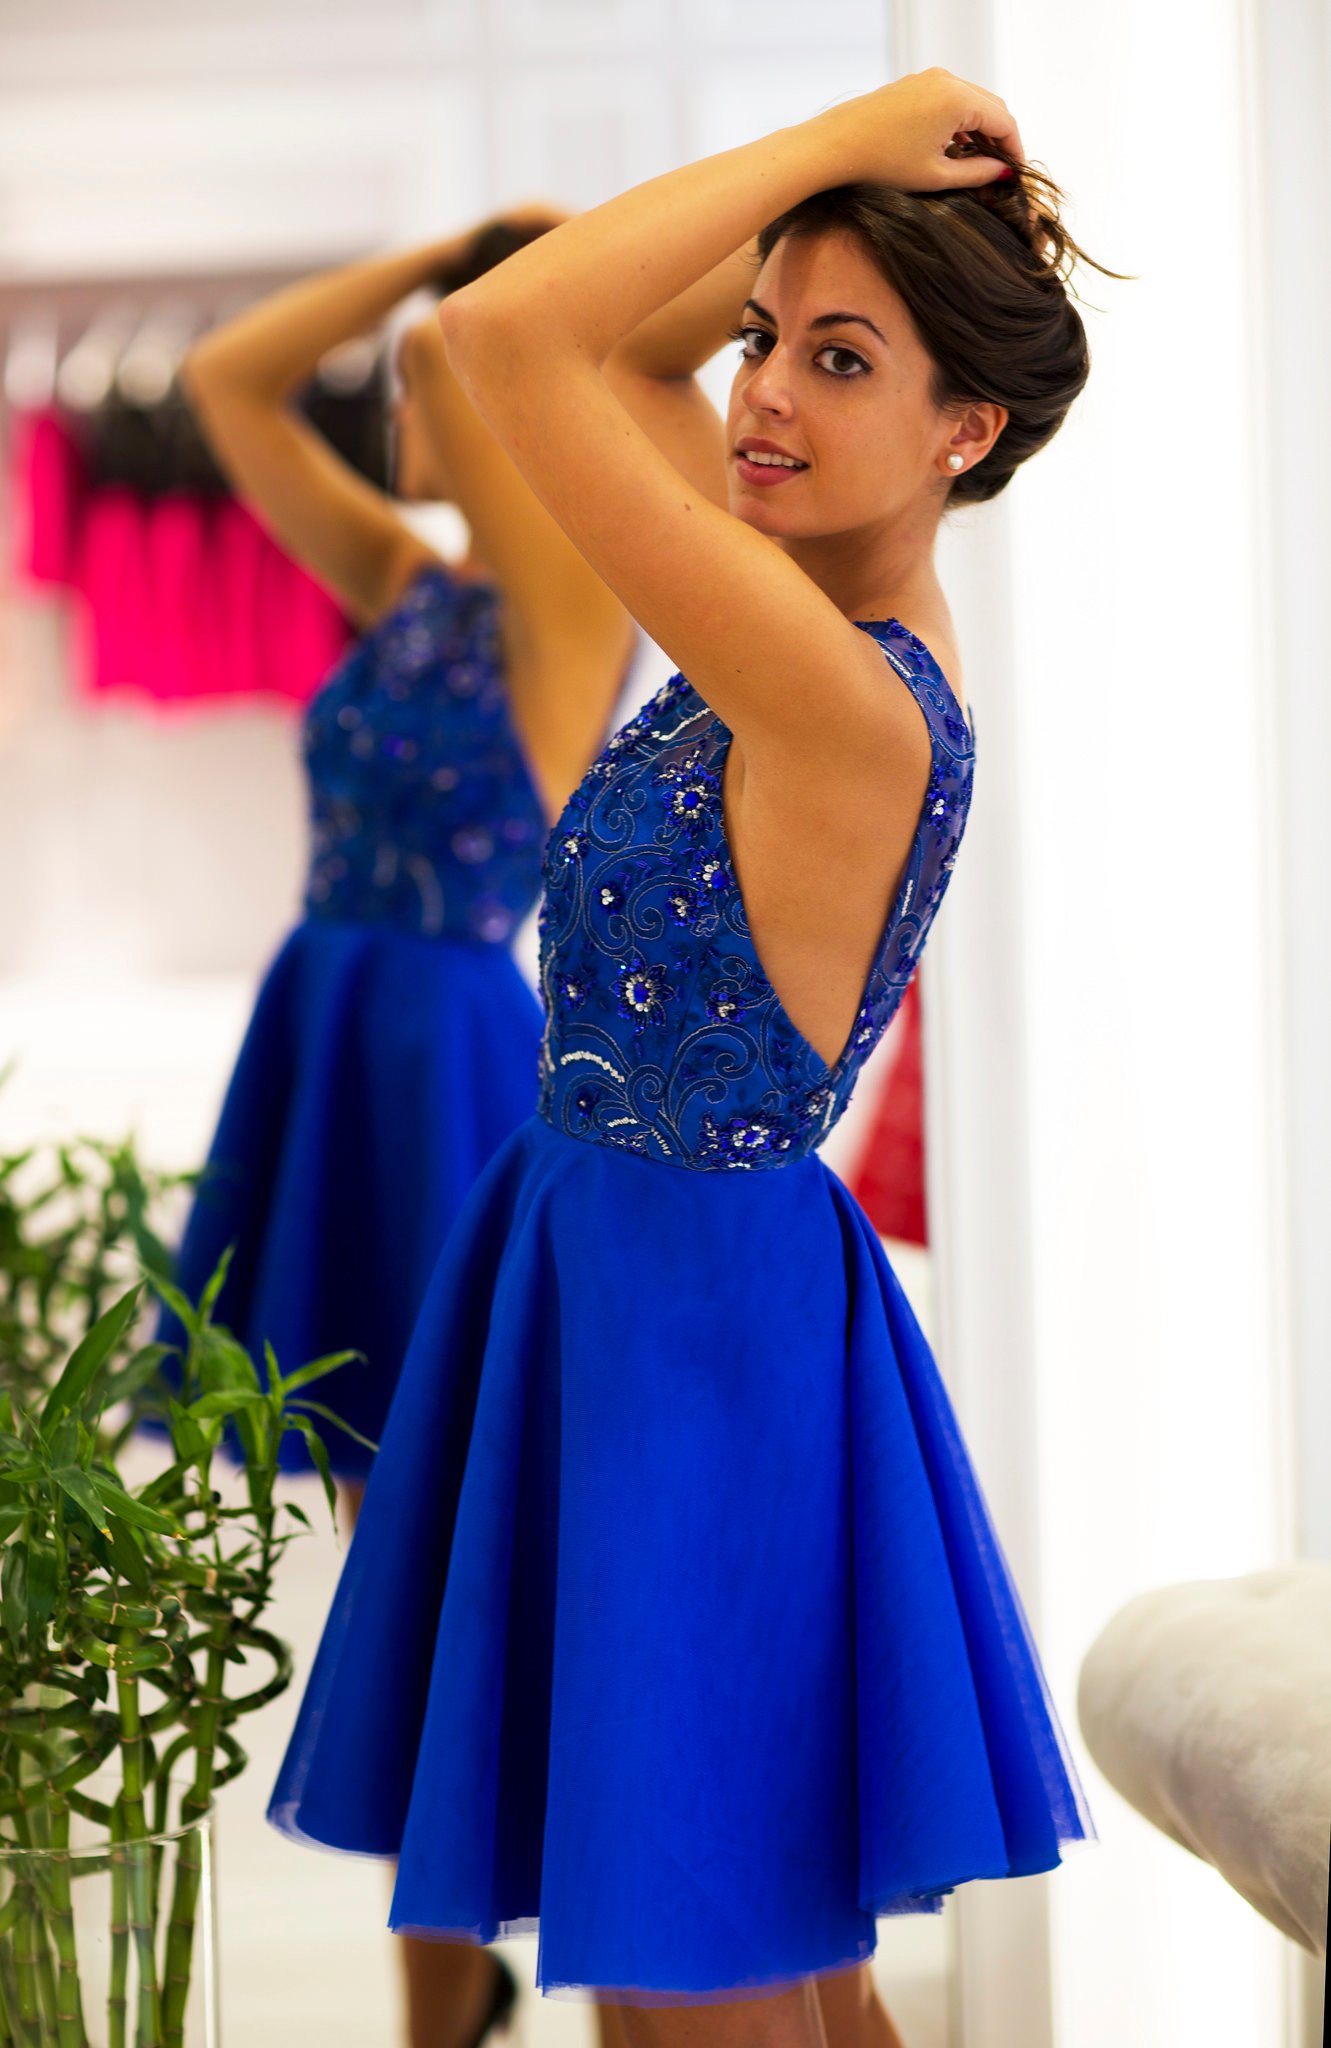 nieve Imaginativo Malentendido Bonitos y elegantes vestidos azul royal para tu graduación